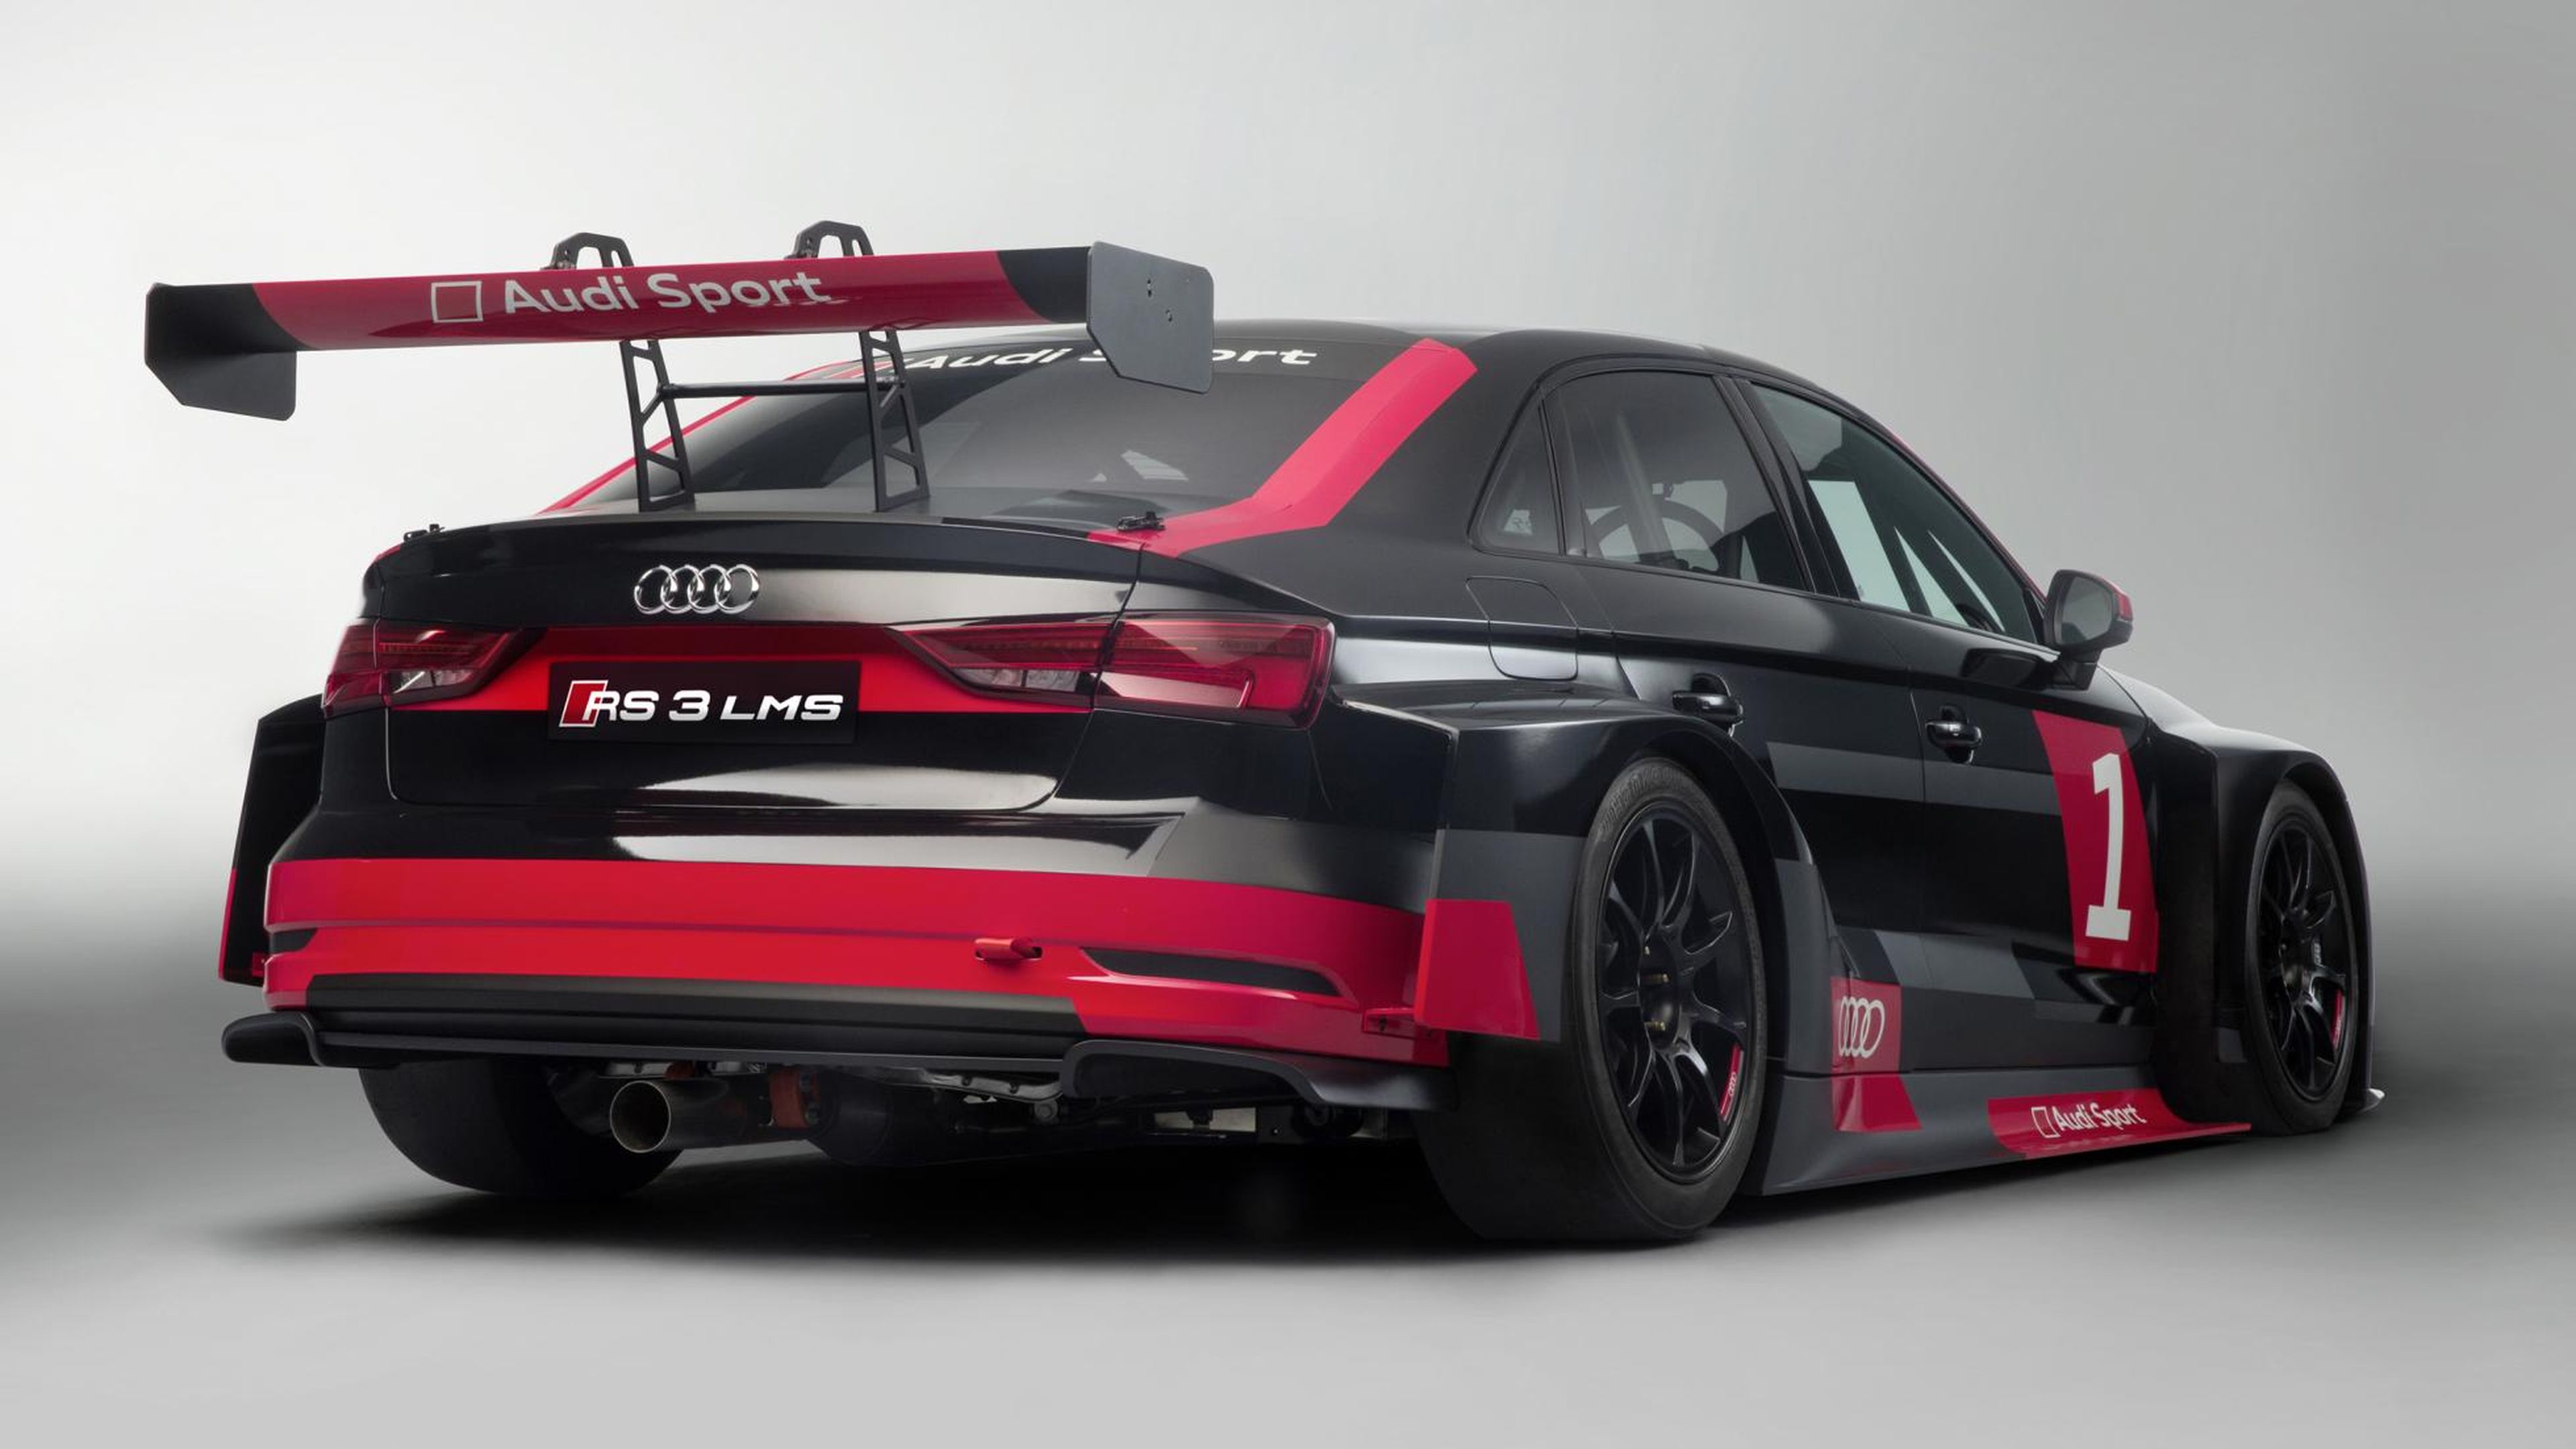 Audi RS3 LMS (I)